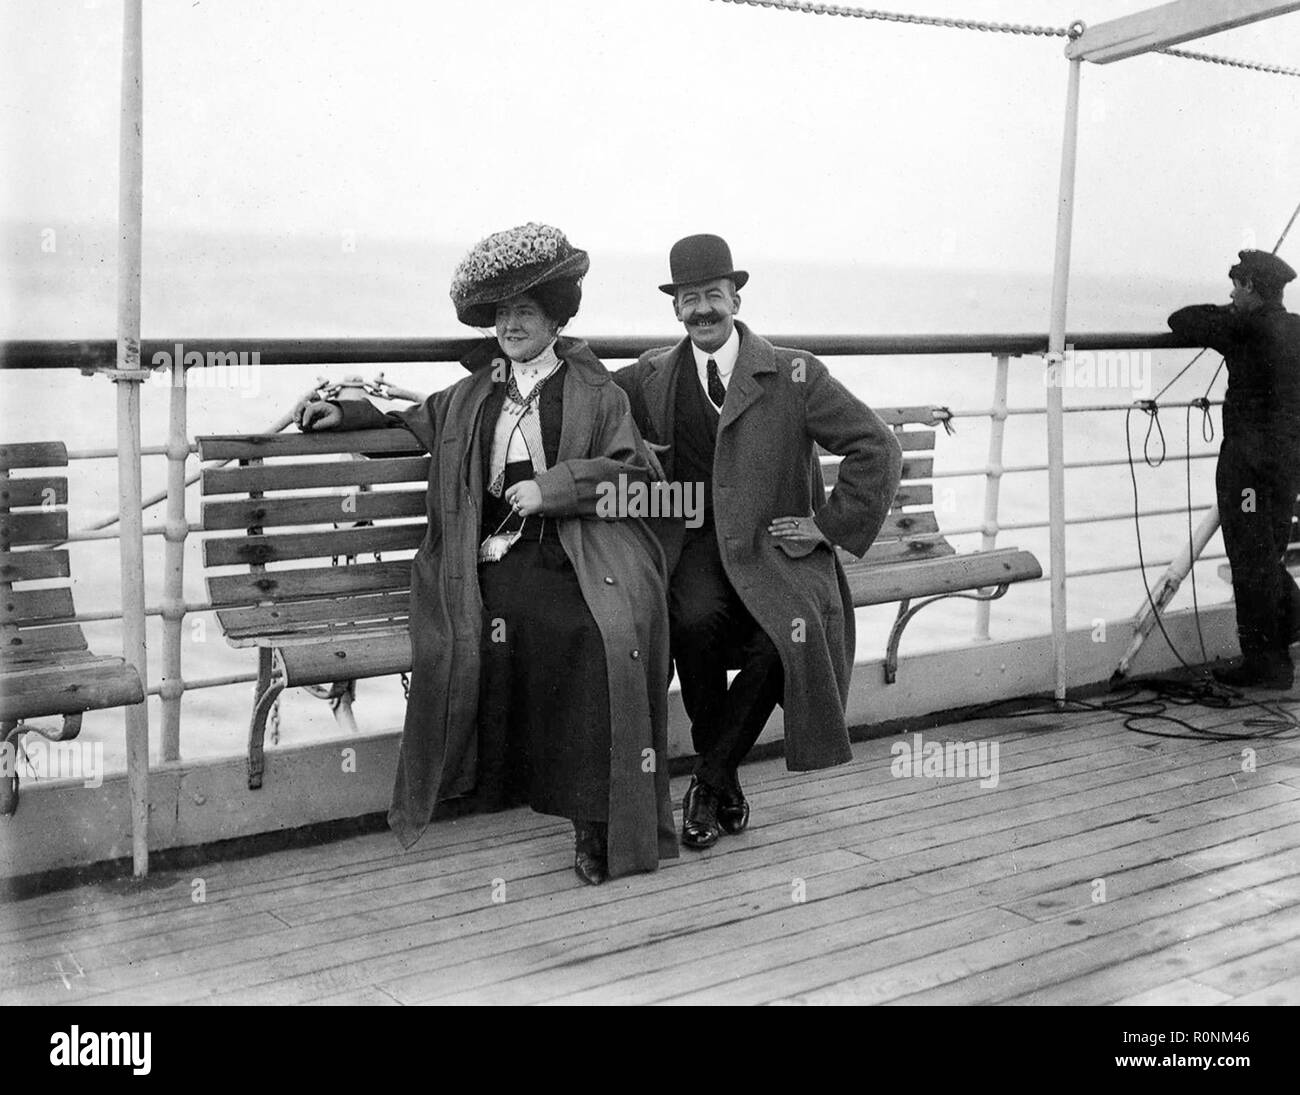 Les passagers à bord du pont du paquebot SS Oronsa britannique en 1911. Le Oronsa fut coulé après avoir été torpillé par un sous-marin allemand en 1918. Banque D'Images